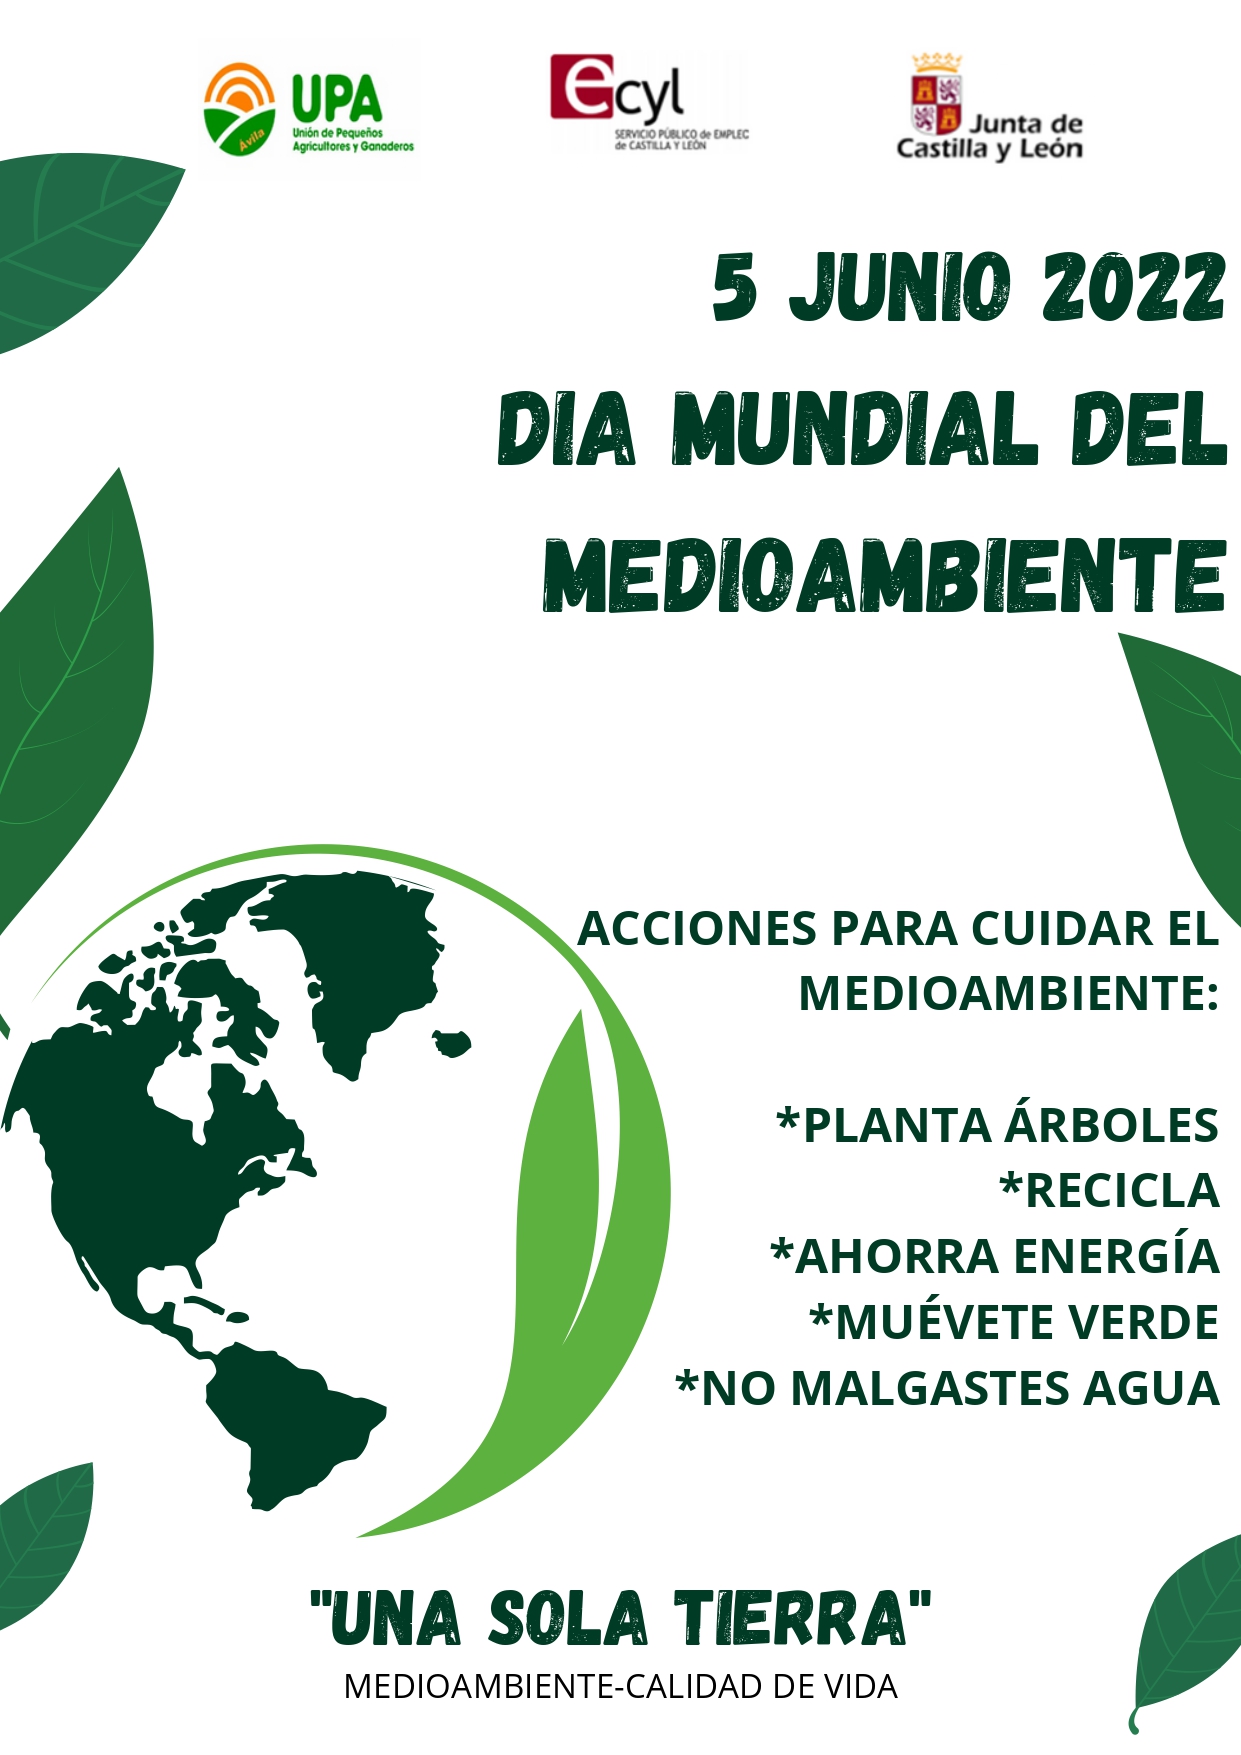 5 JUNIO 2022 DIA MUNDIAL DEL MEDIOAMBIENTE UNA SOLA TIERRA page 0001